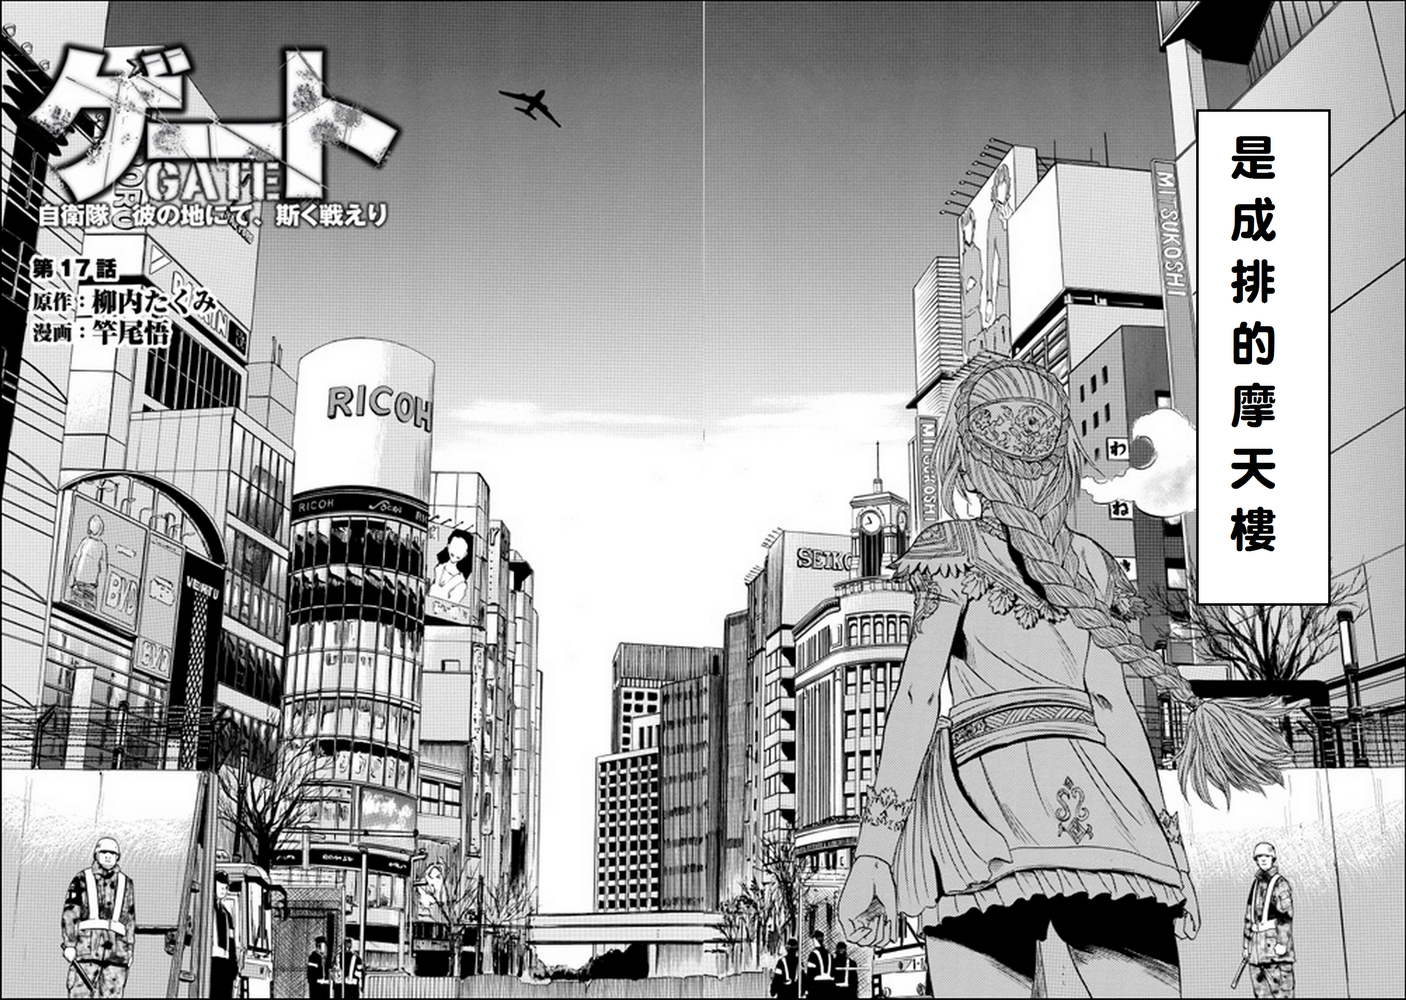 Gate奇幻自衛隊 第17話 漫畫線上看 動漫戲說 Acgn Cc